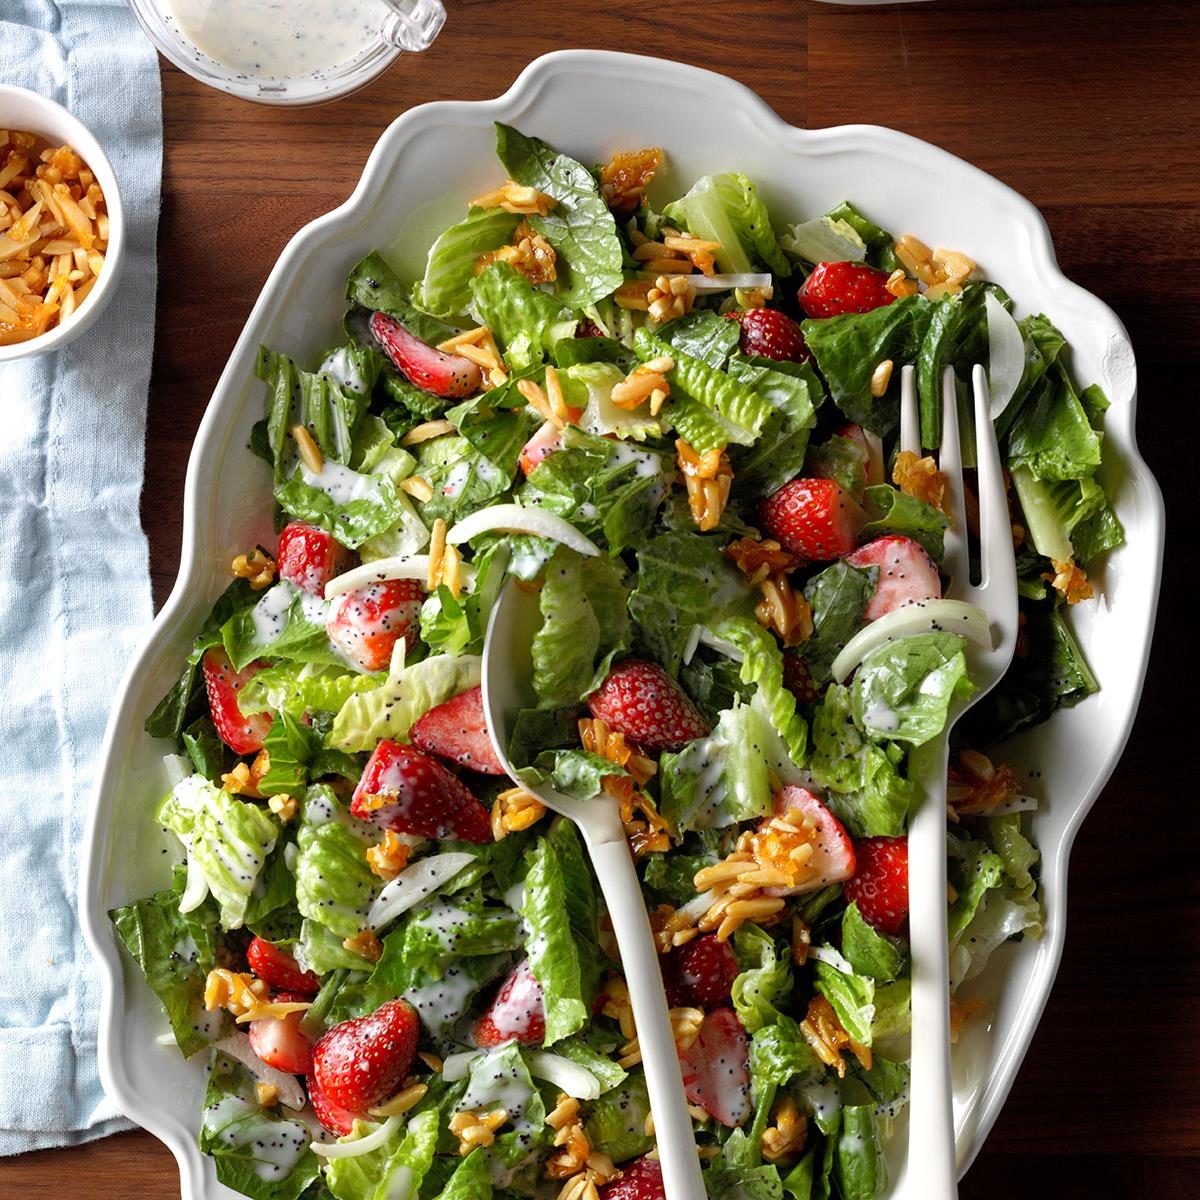 How to Make Homemade Salad Dressing: 9 Easy Recipes!